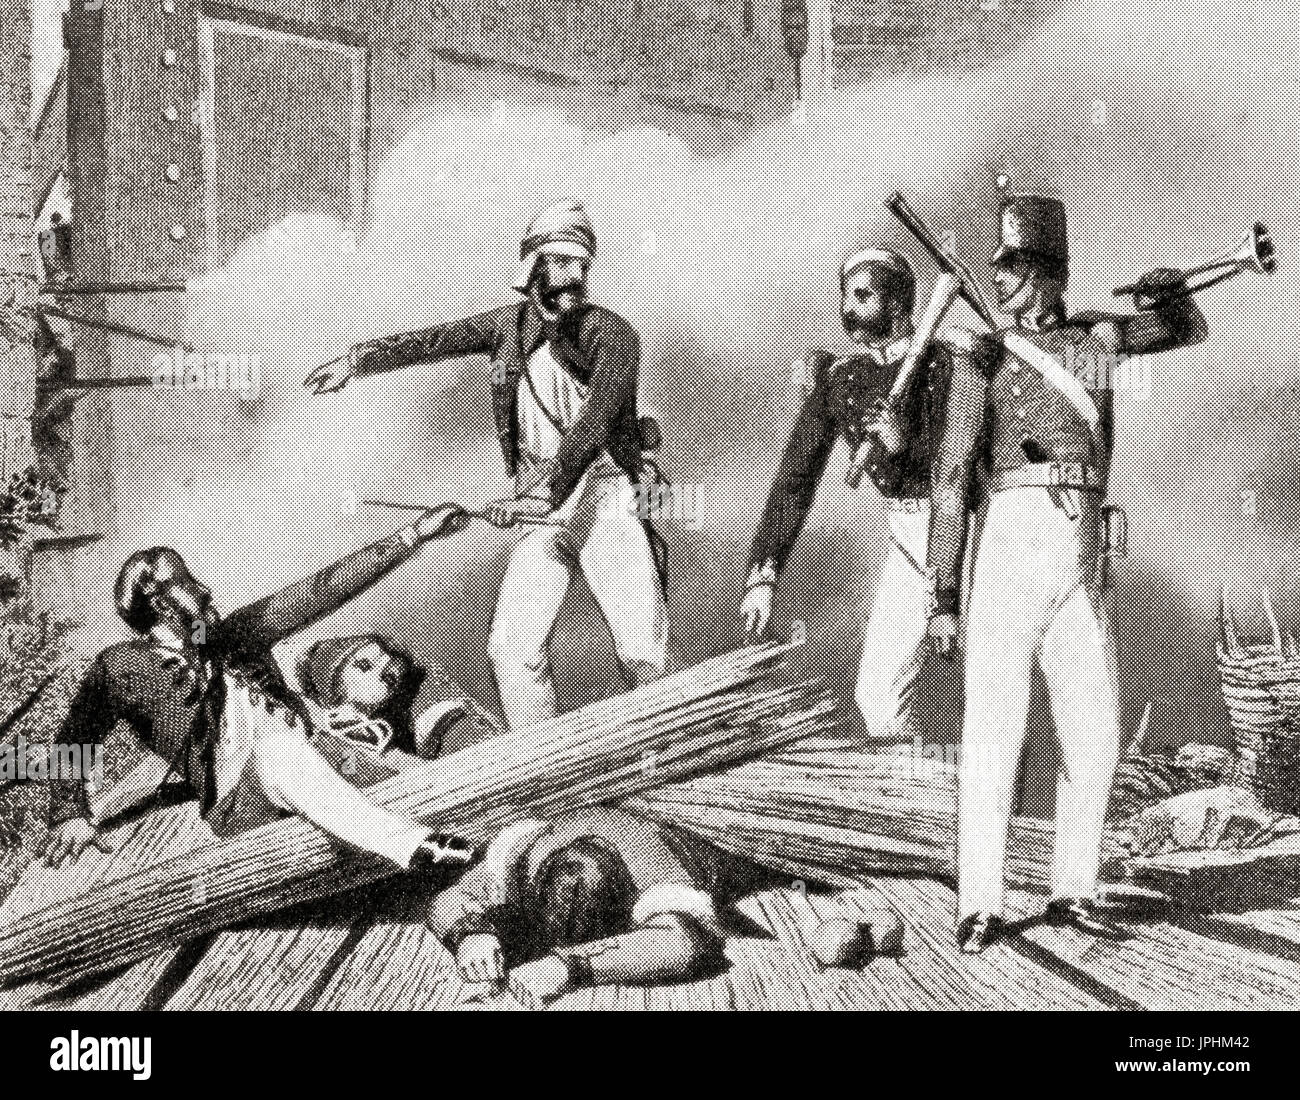 L'assaut sur la porte ou la porte du Cachemire Cachemire par des soldats britanniques lors de la rébellion indienne de 1857, au cours de laquelle le pont et la gauche de la porte des feuilles ont été détruits à l'aide de la poudre, cela a commencé l'assaut final sur les rebelles vers la fin de siège de Delhi. L'histoire de Hutchinson de l'ONU, publié en 1915. Banque D'Images